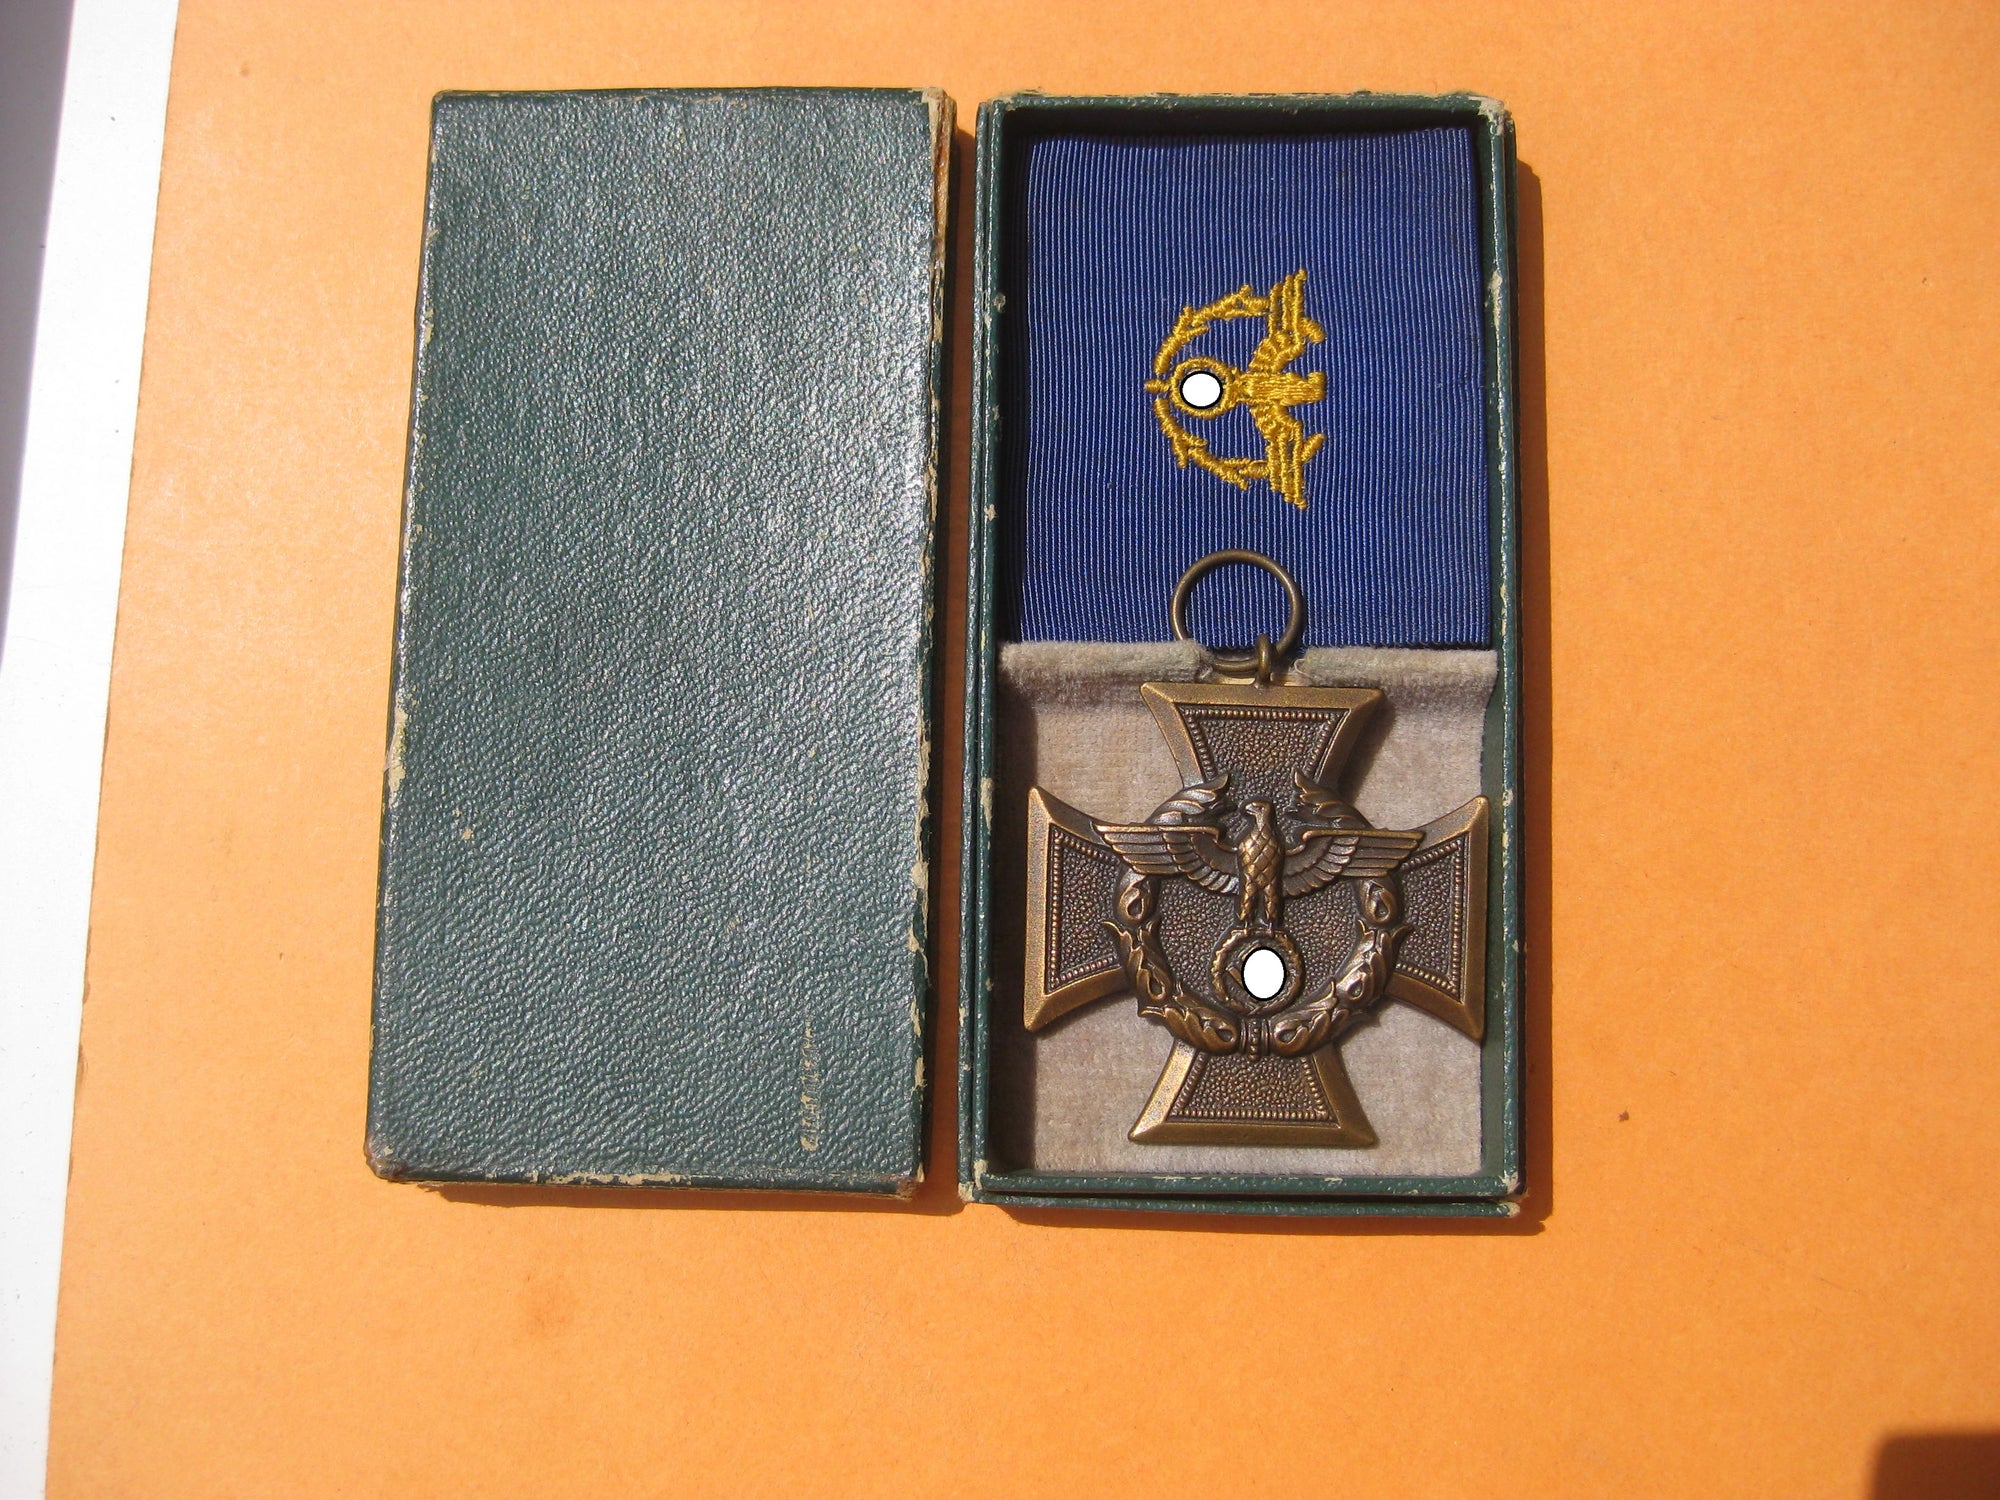 Zollgrenzschutz Ehrenzeichen 1938 in Verleihungsschachtel / Verleihungsetui Mint Condition